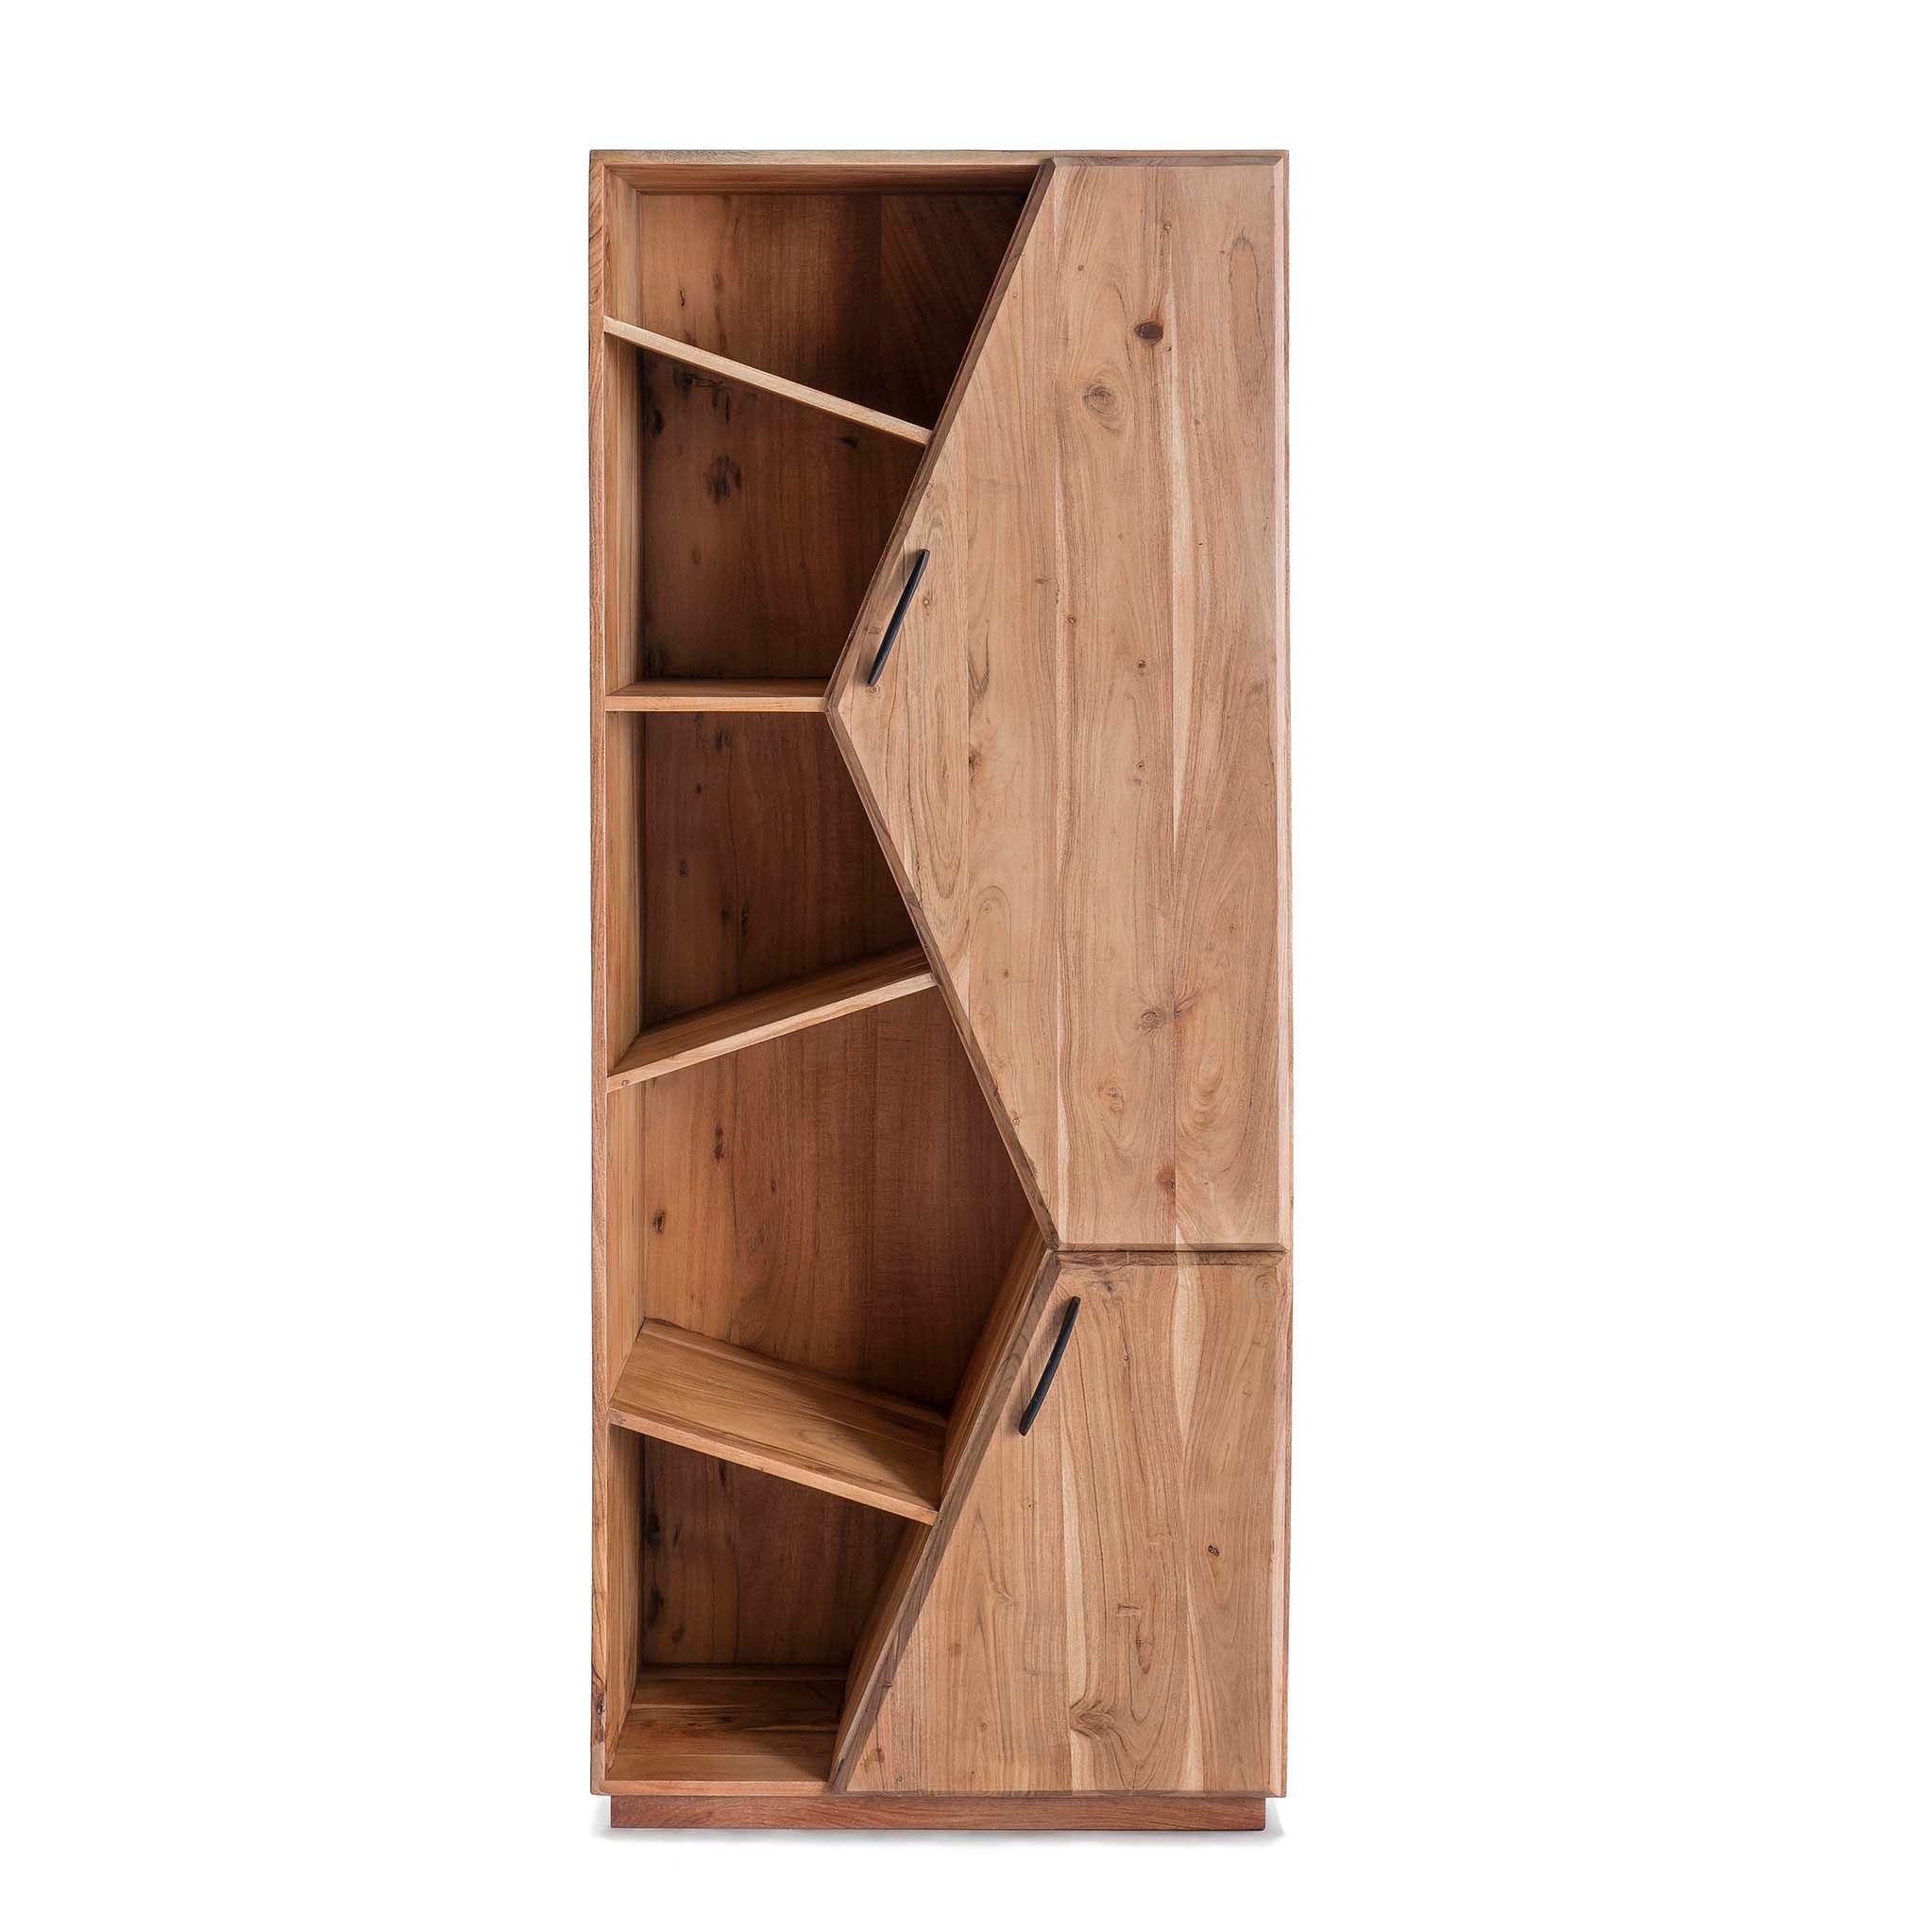 Yavin Acacia Bookcase Storage Cabinet Roseland